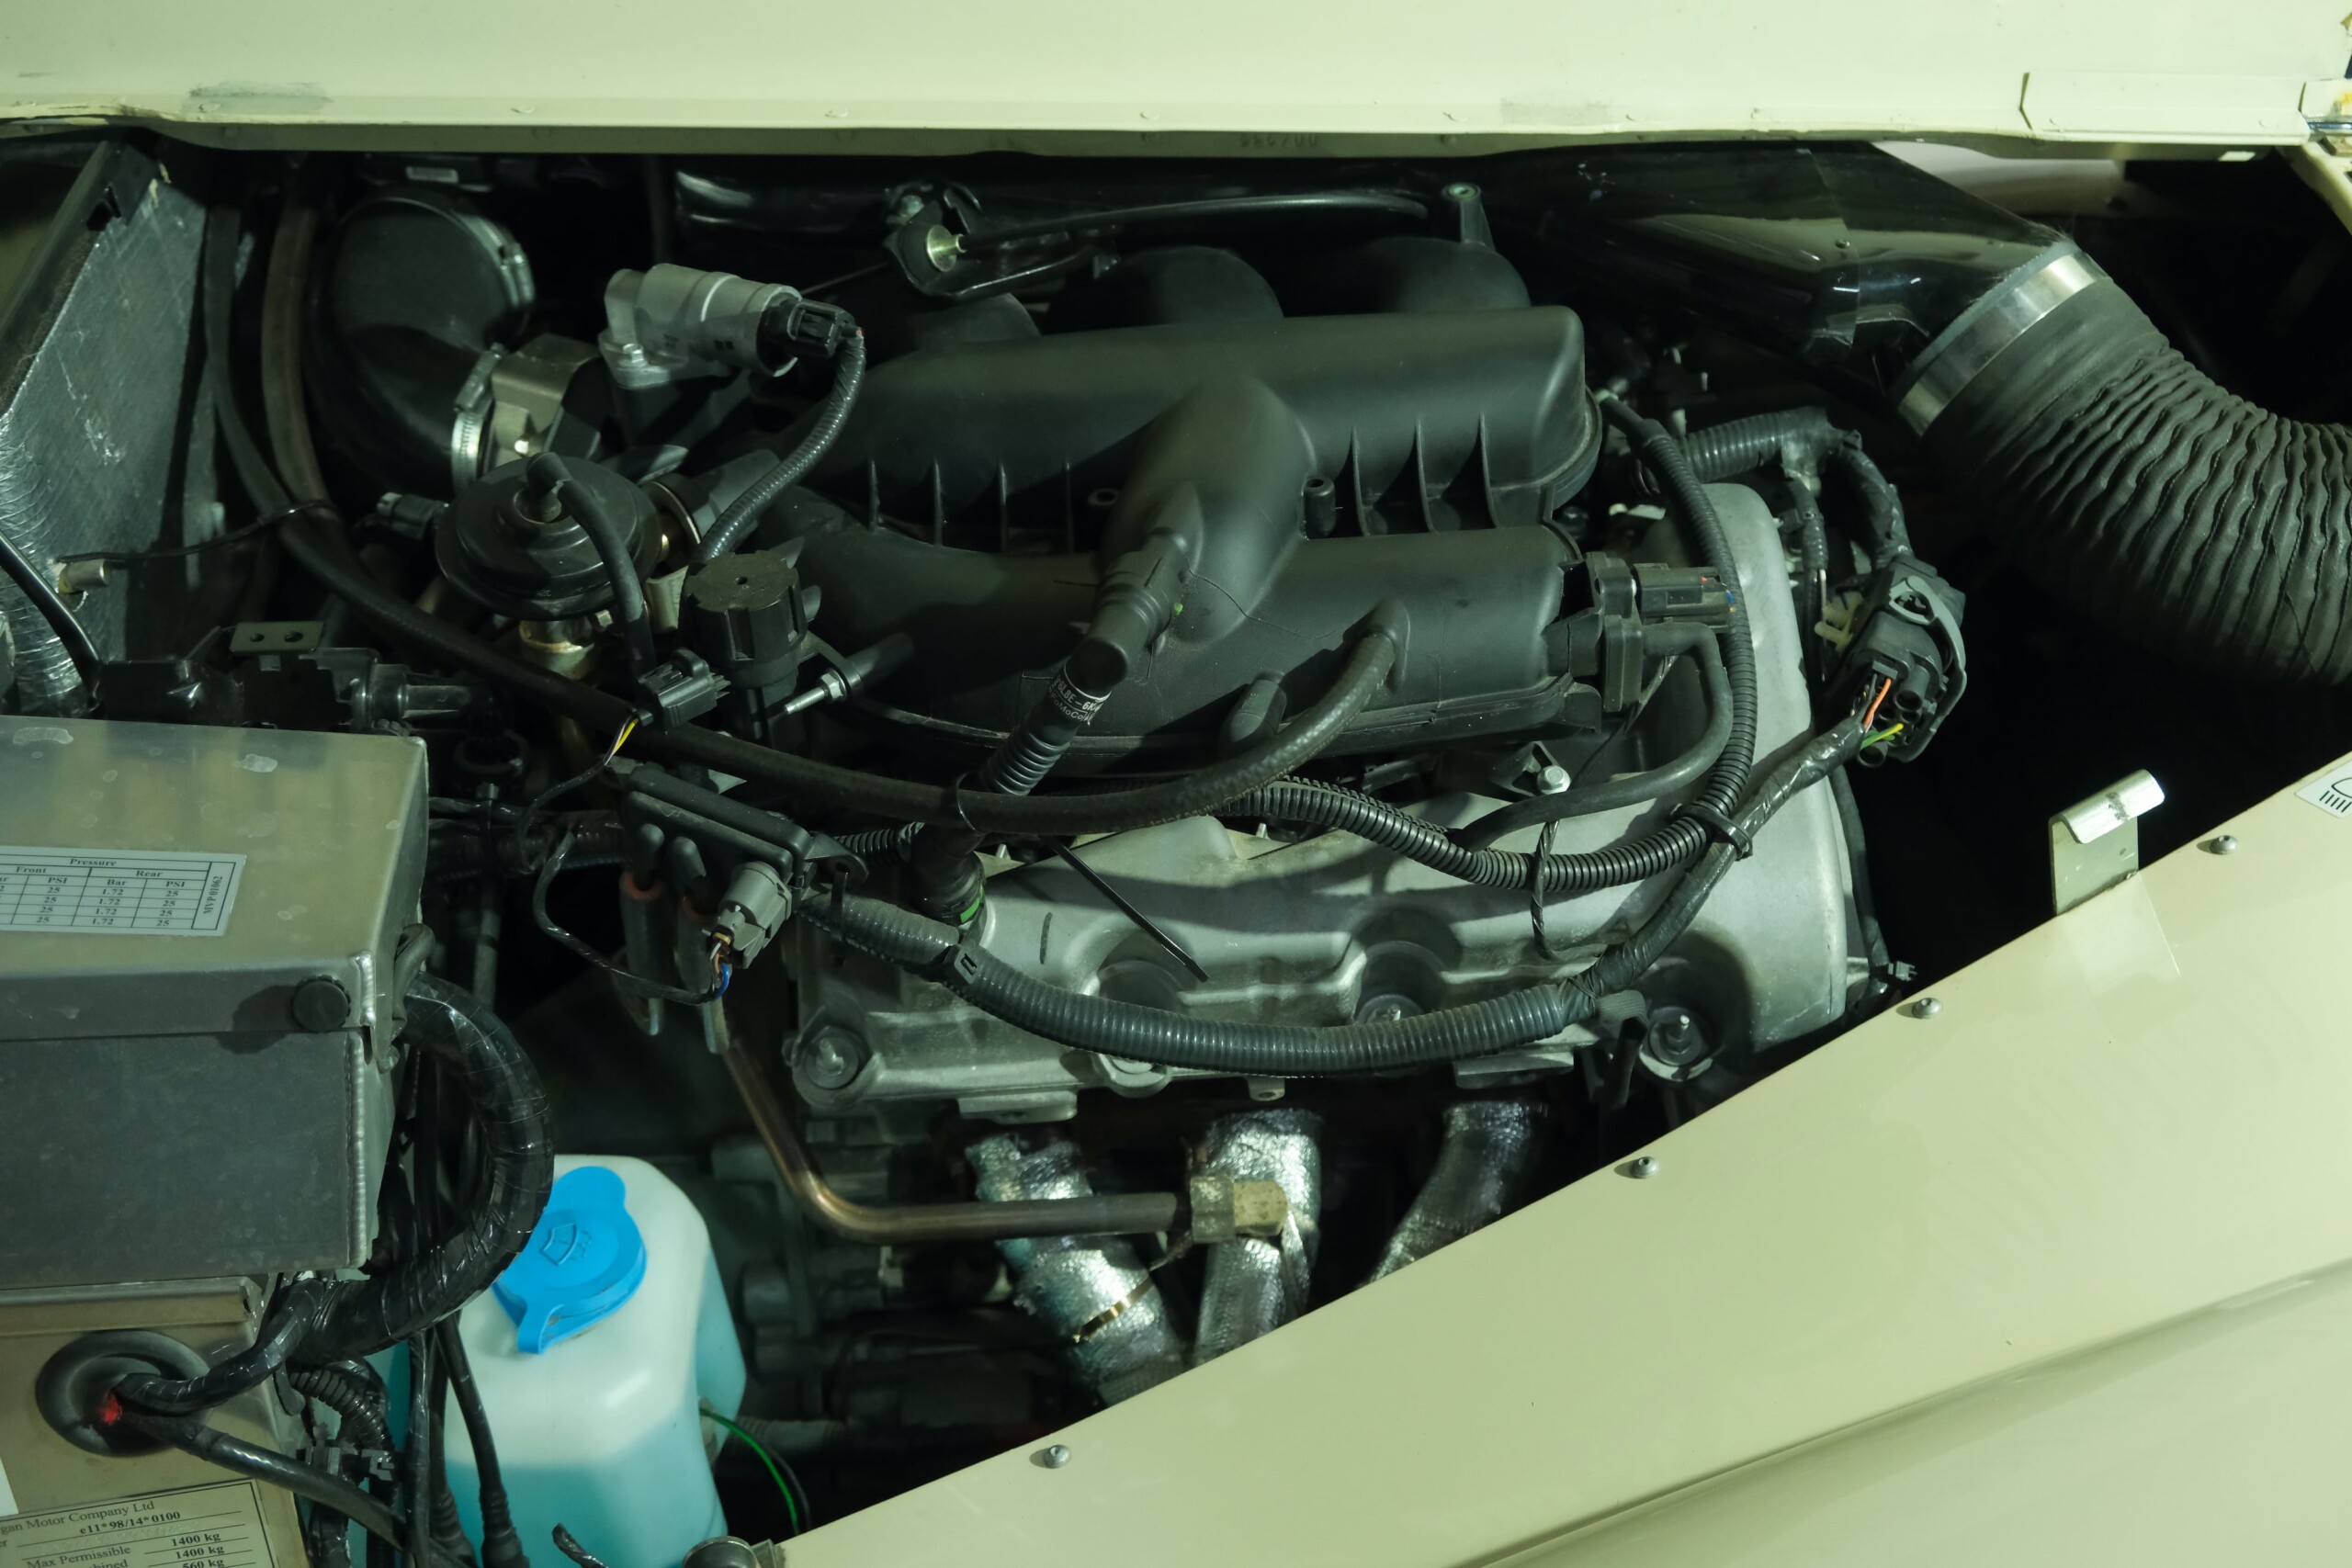 MORGAN ROADSTER V6 3,0L – CAPOTS VINTAGE 2